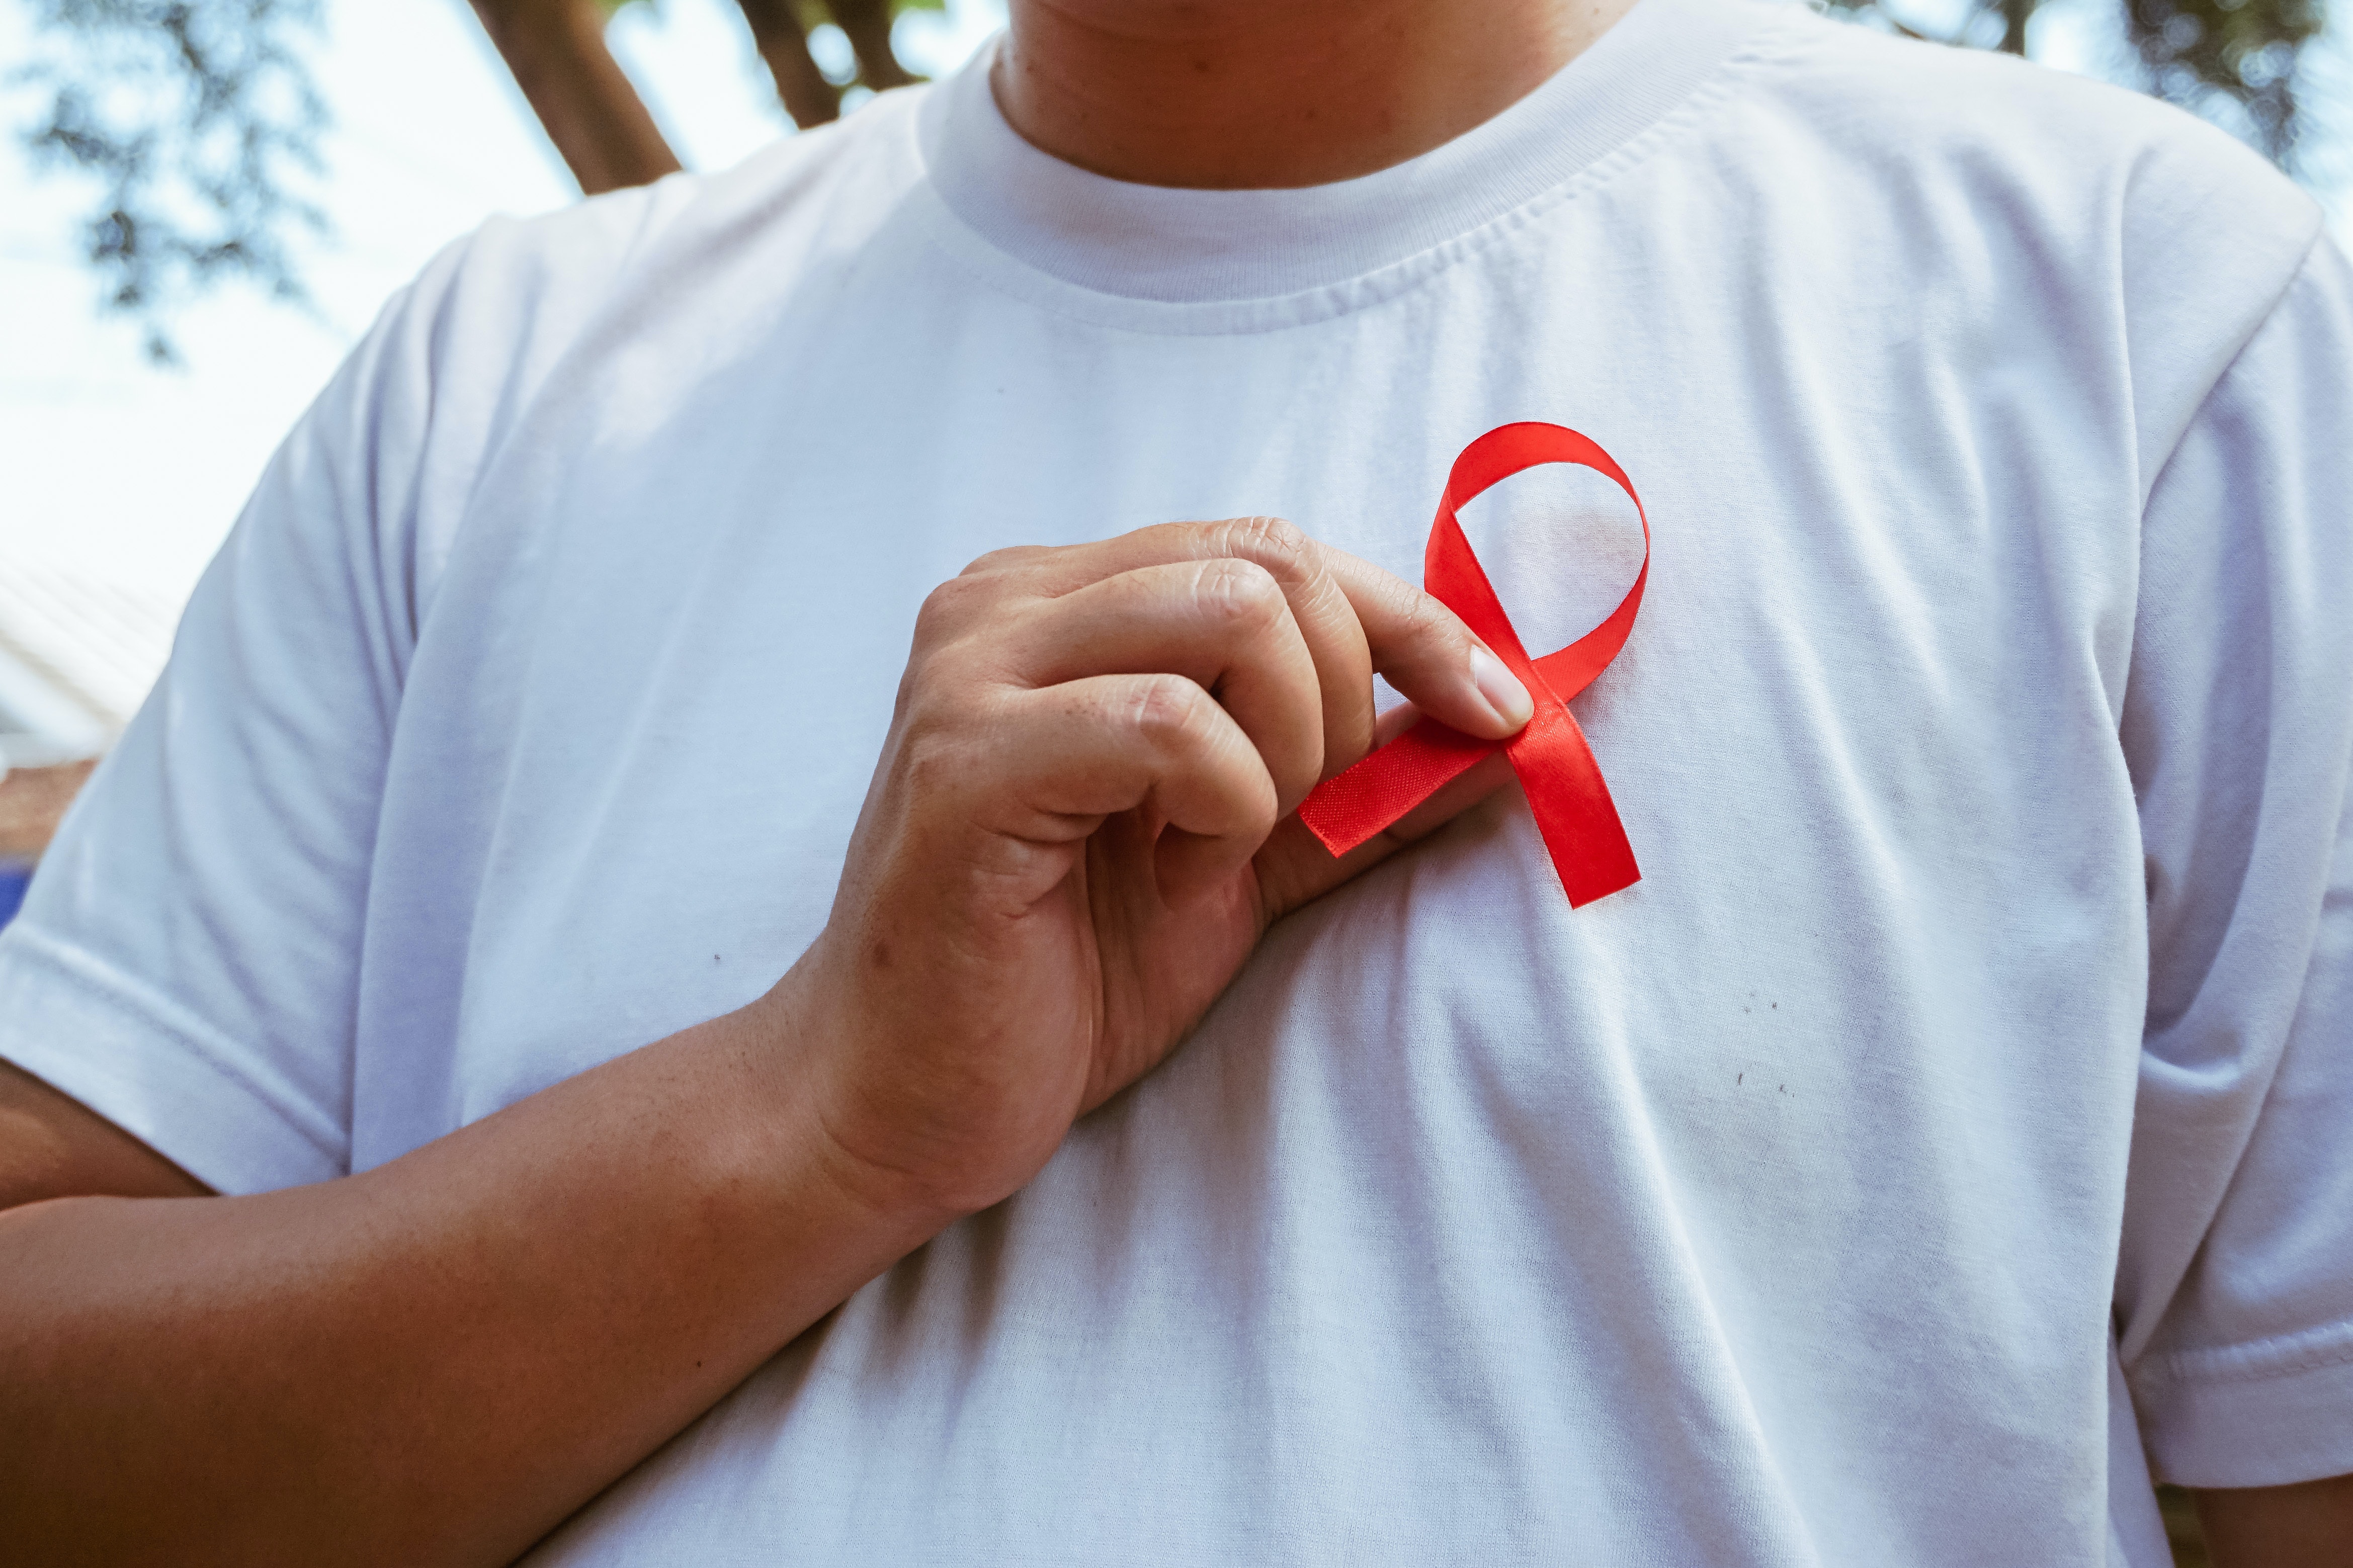 Μια επαναστατική νέα θεραπεία για τον HIV μόλις εγκρίθηκε στη Βρετανία